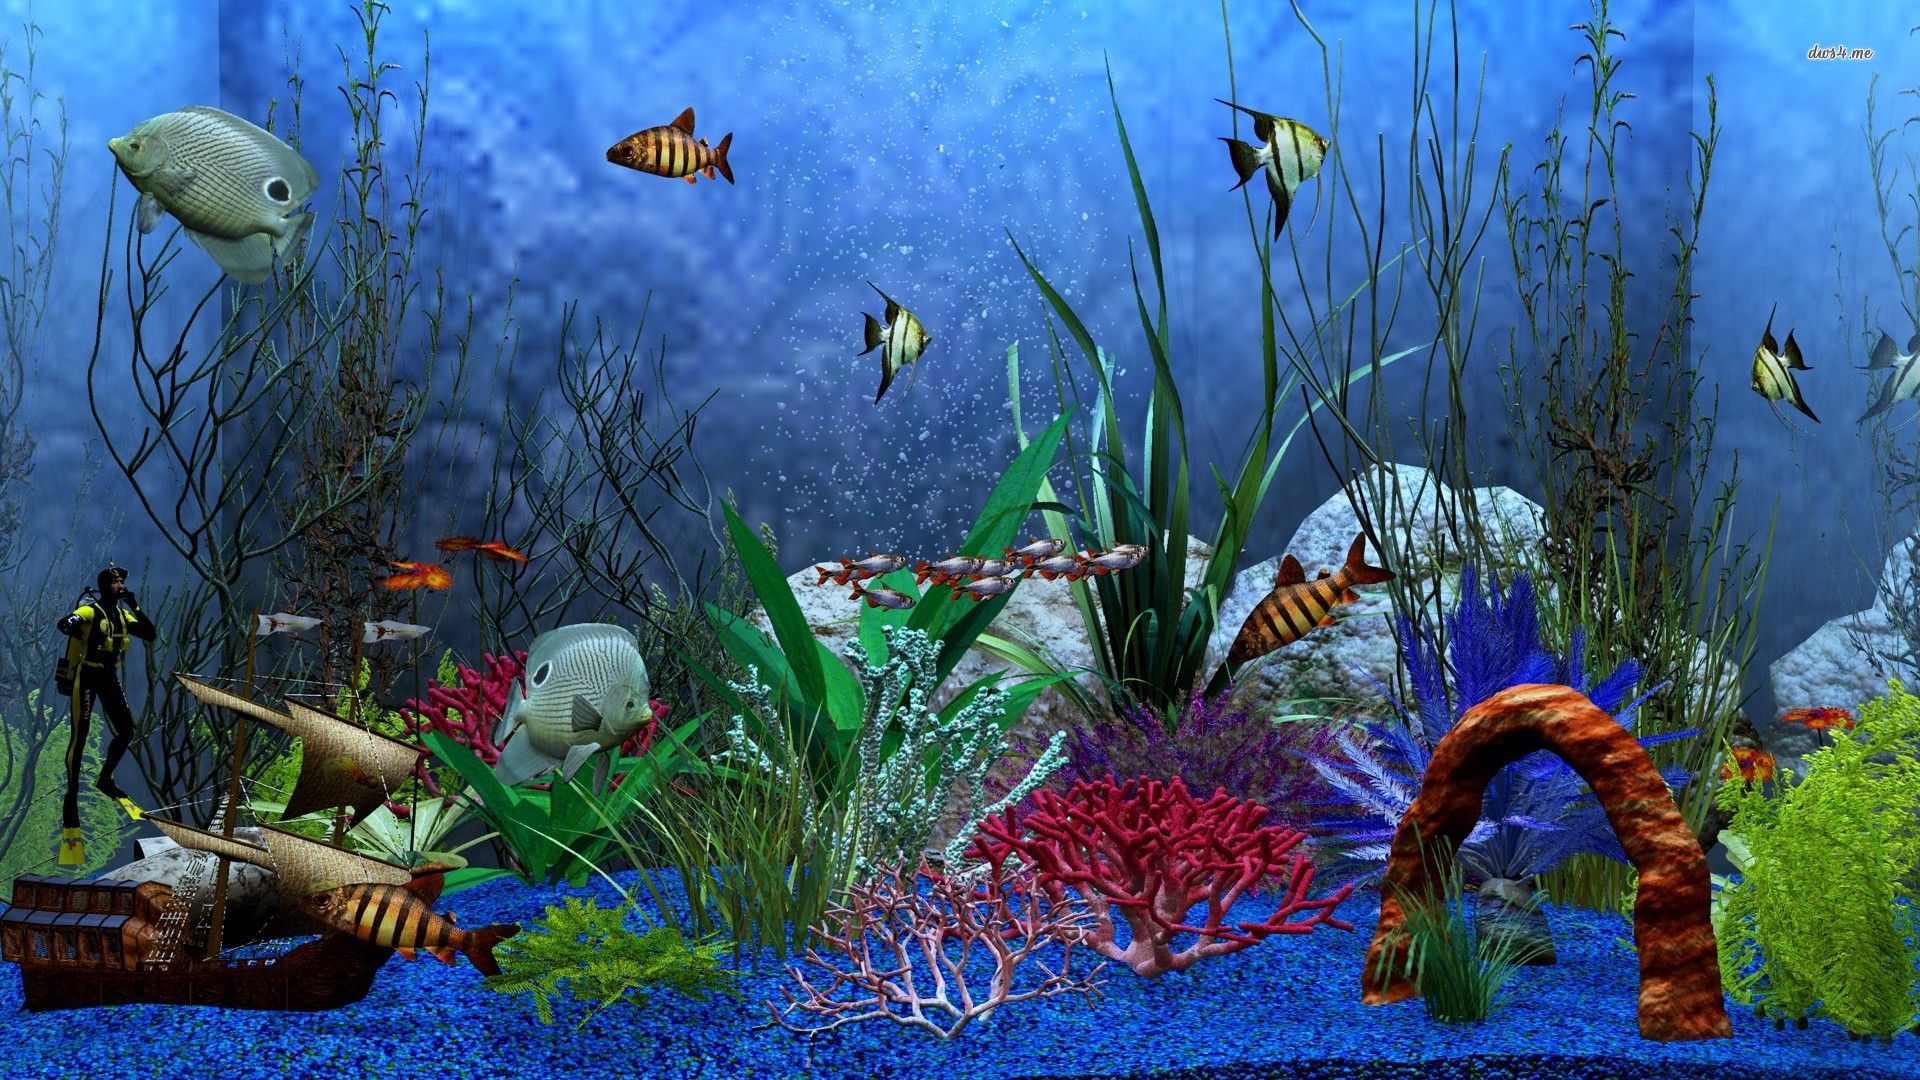 Aquarium wallpaper - Digital Art wallpapers - #8099